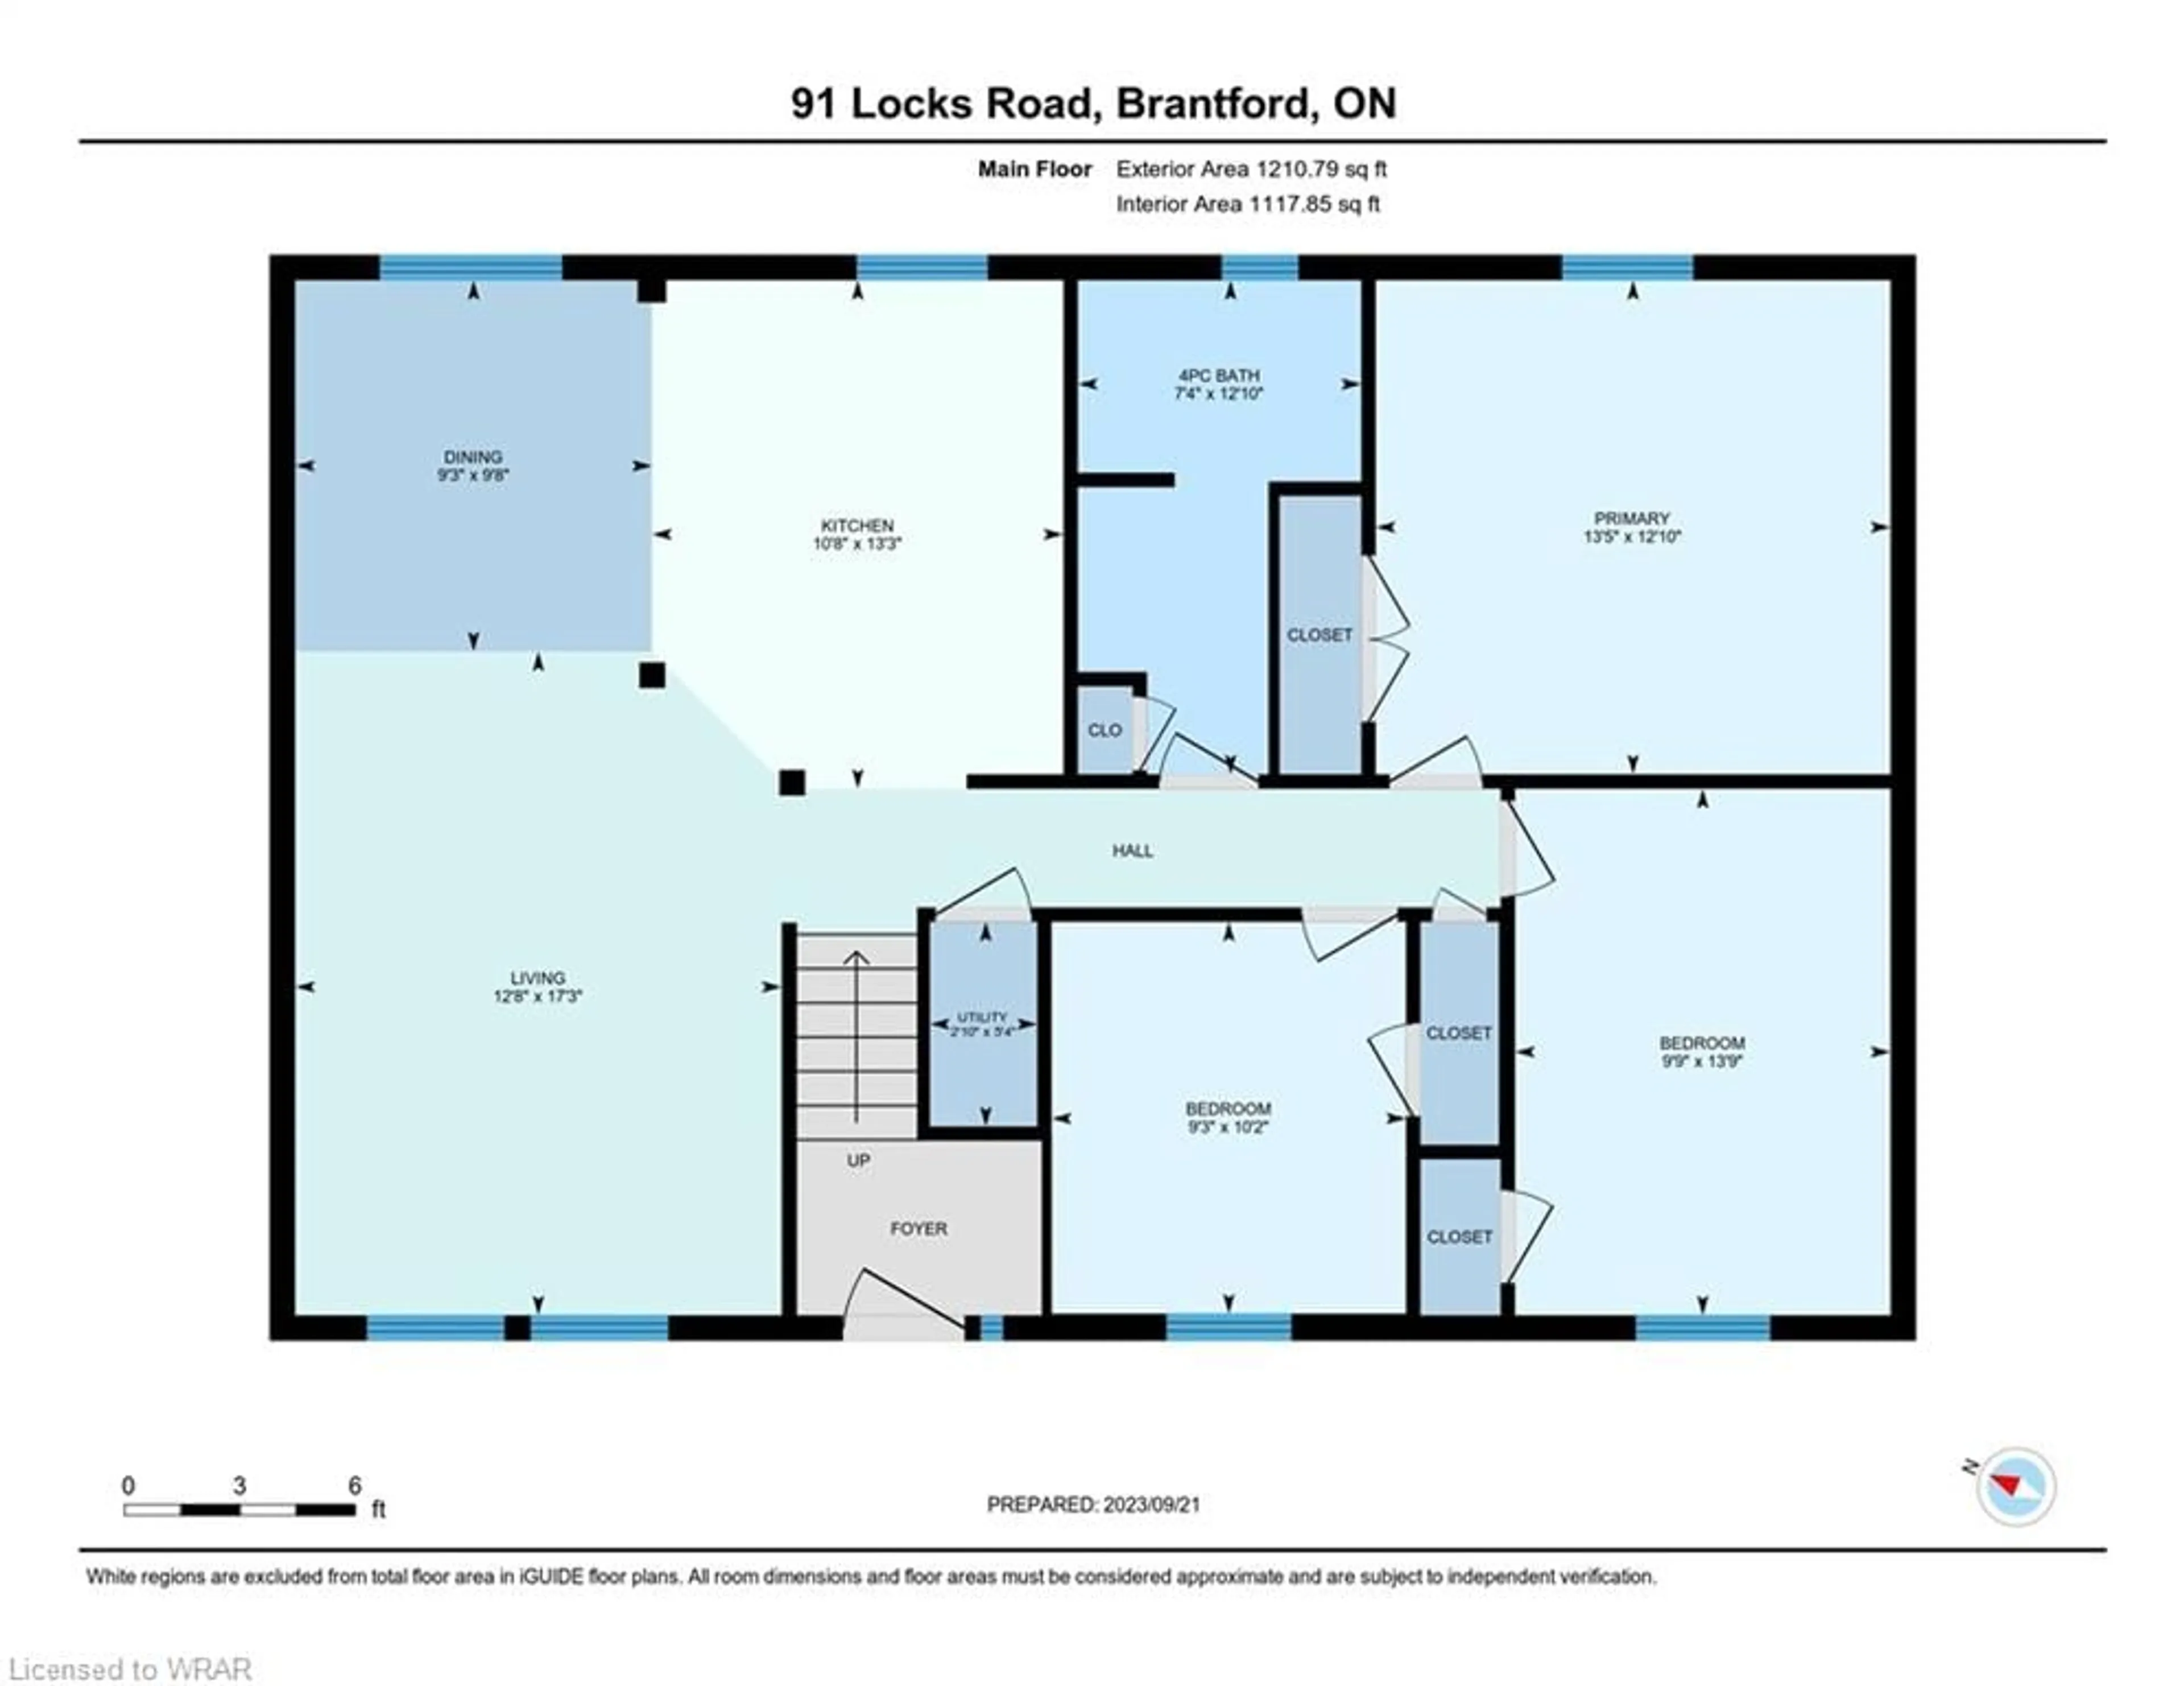 Floor plan for 91 Locks Rd, Brantford Ontario N3S 7L9